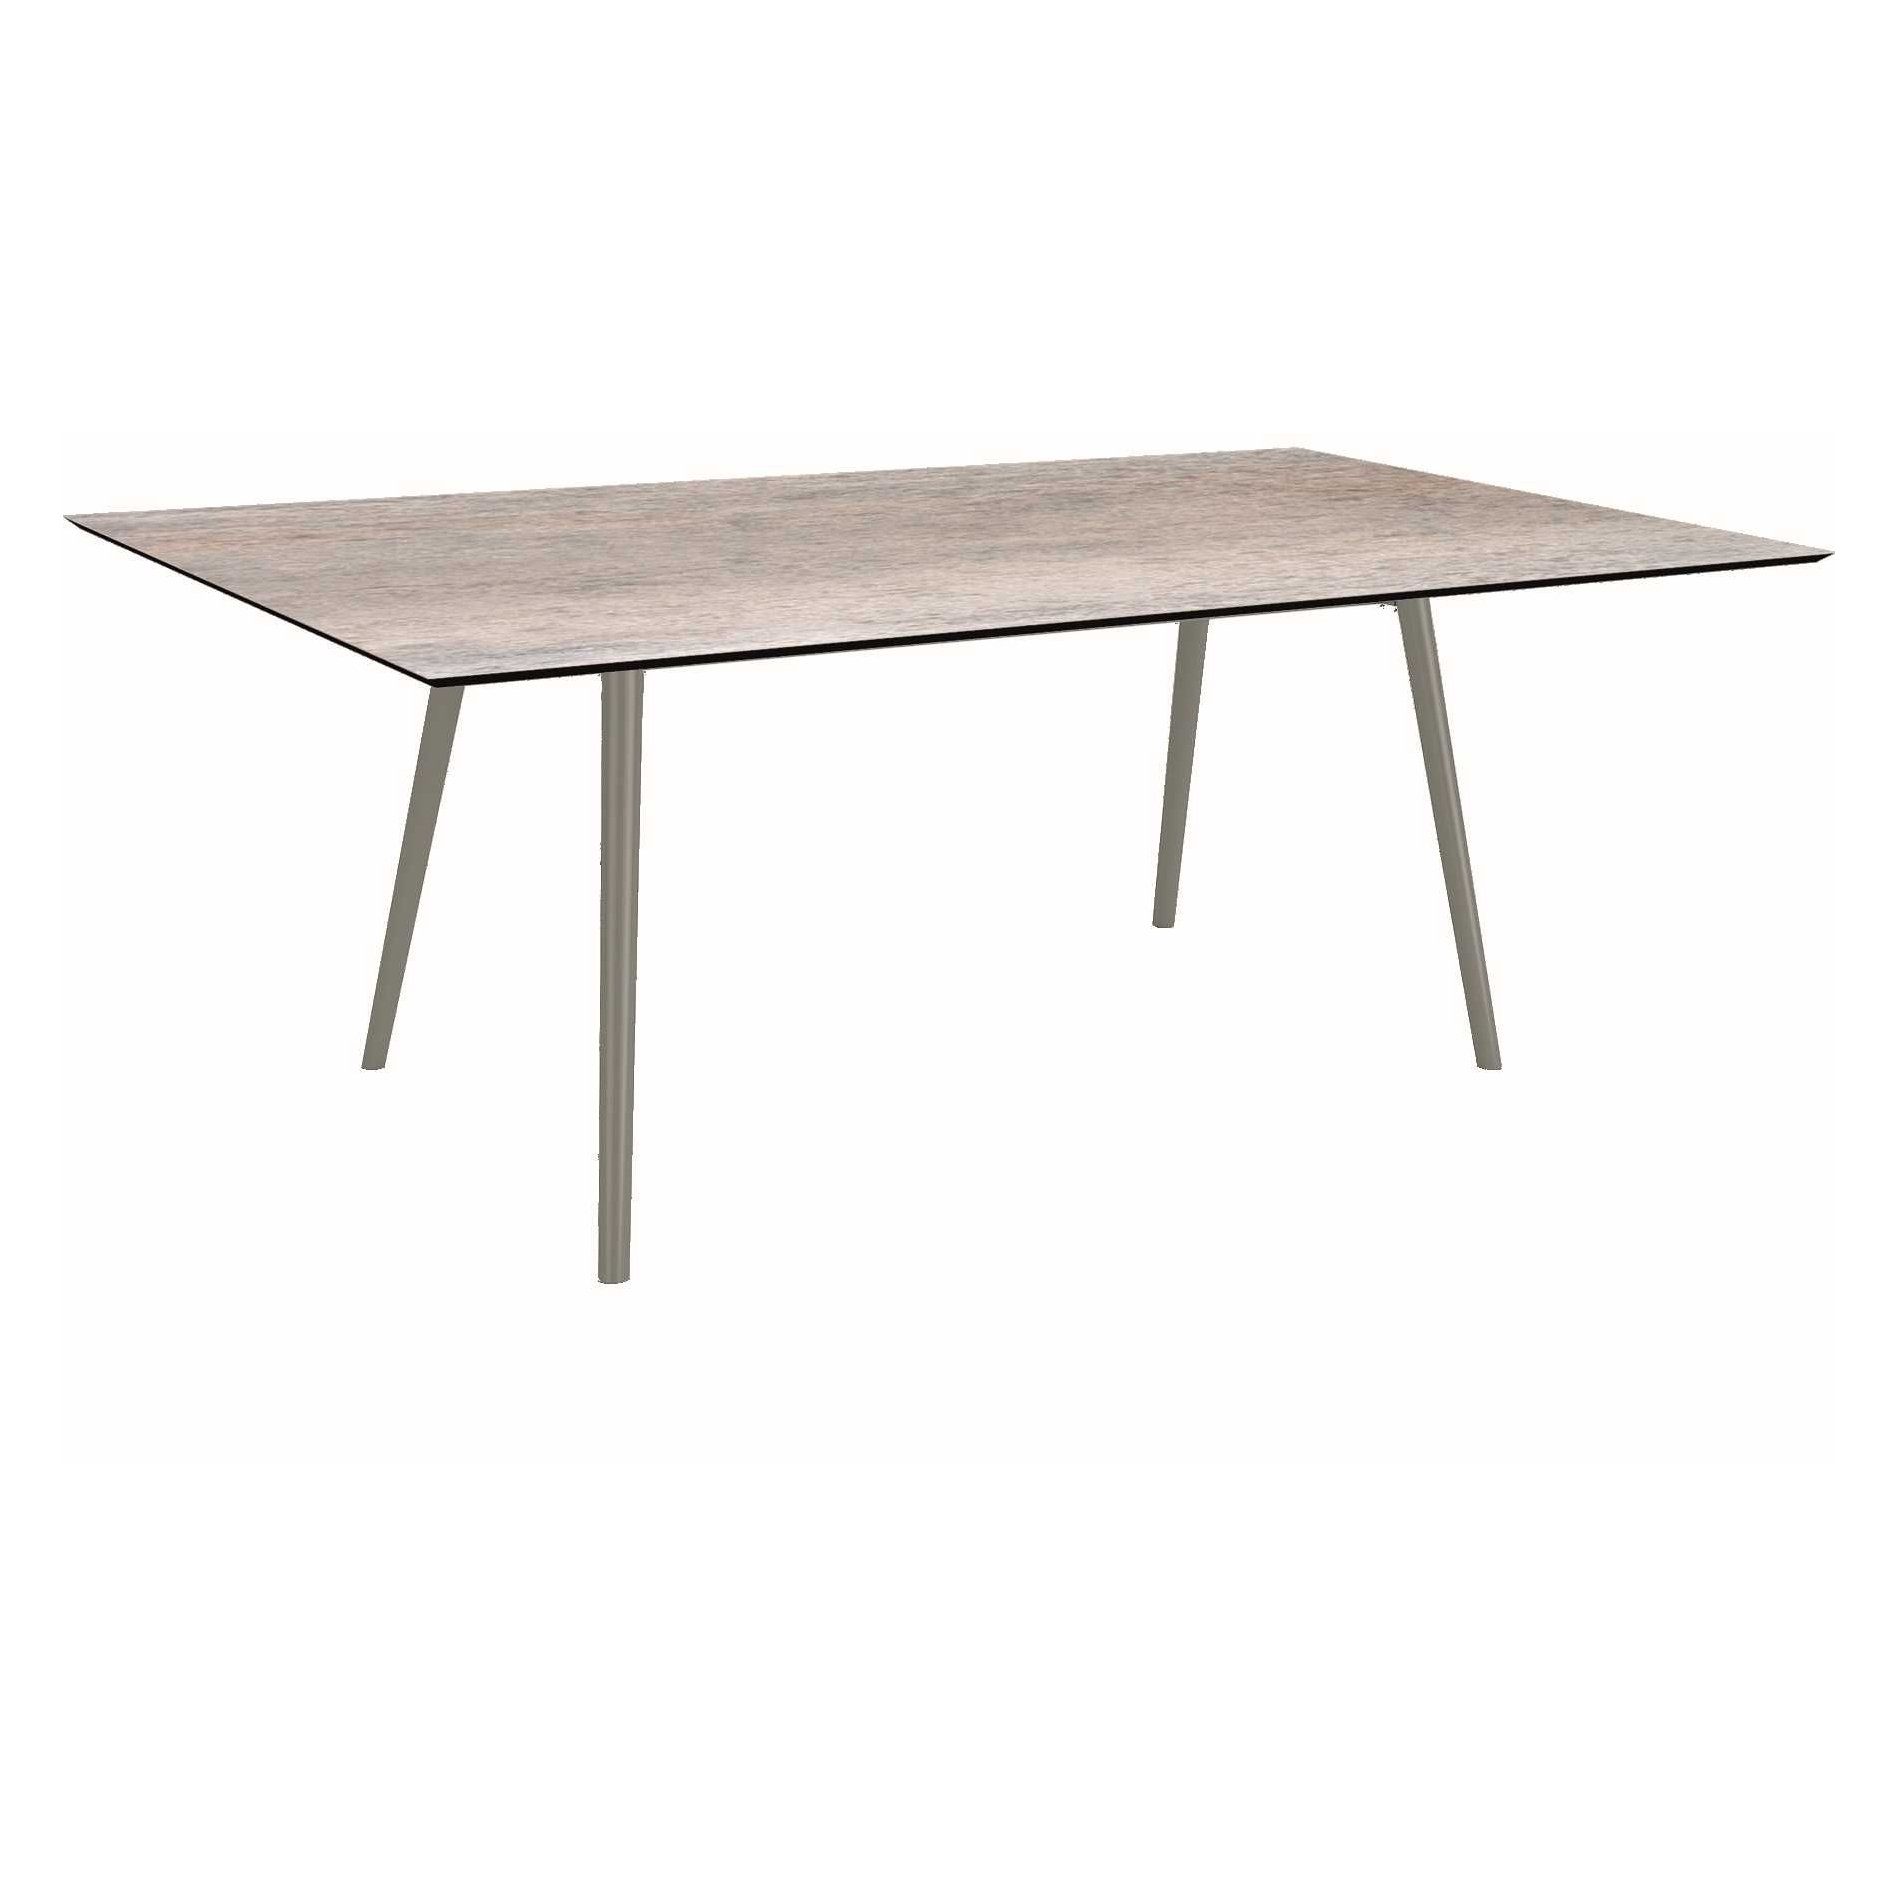 Stern Tisch "Interno", Größe 180x100cm, Alu graphit, Rundrohr, Tischplatte HPL Smoky